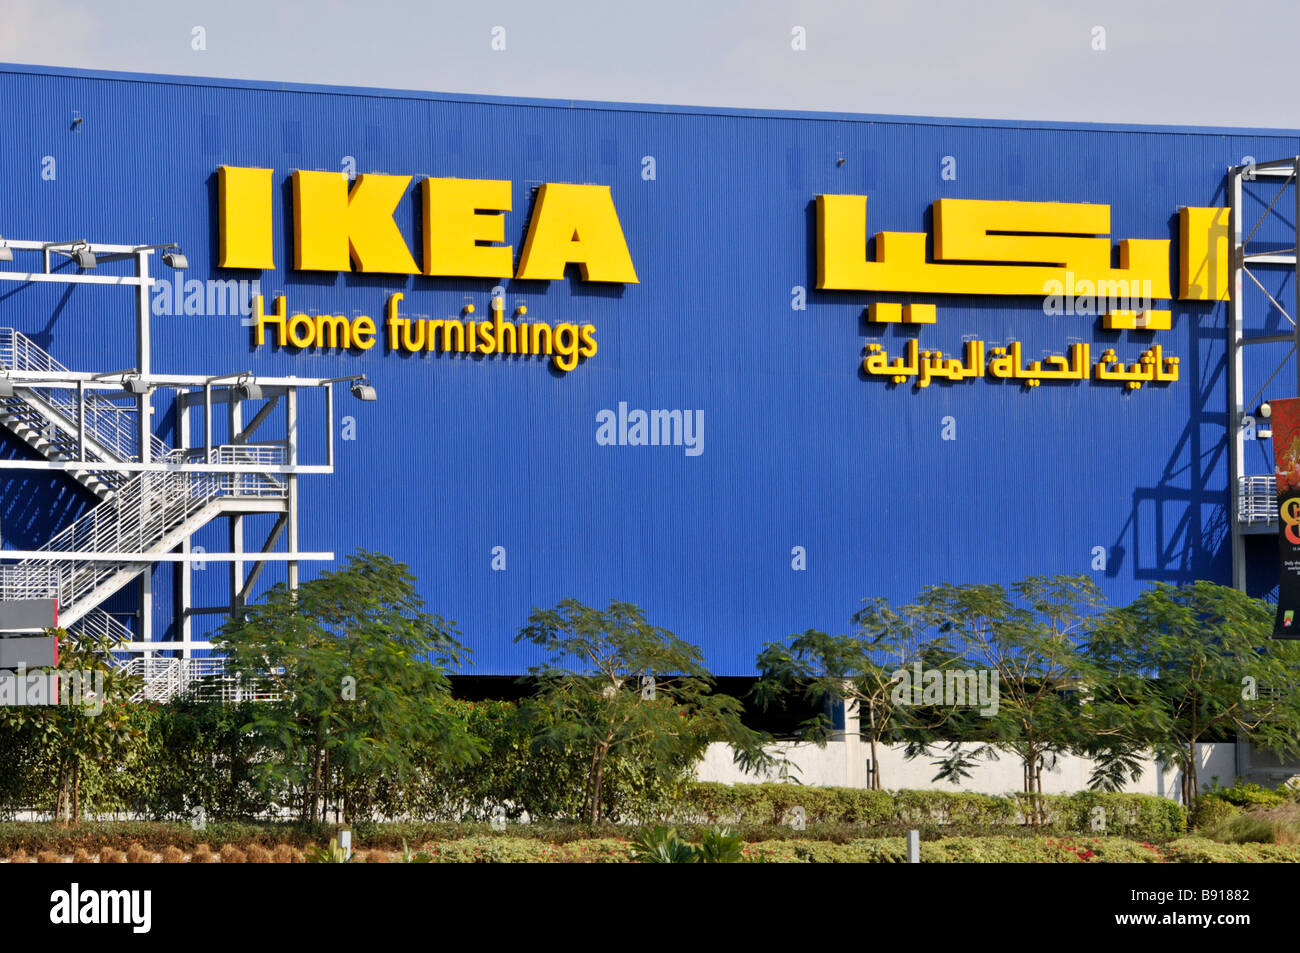 Dubai Ikea casa arredamento negozio shopping edificio moderno bilingue arabo Segno e logo iconico scalinata di fuga dal fuoco esterna United Arab Emirati Arabi Uniti Foto Stock